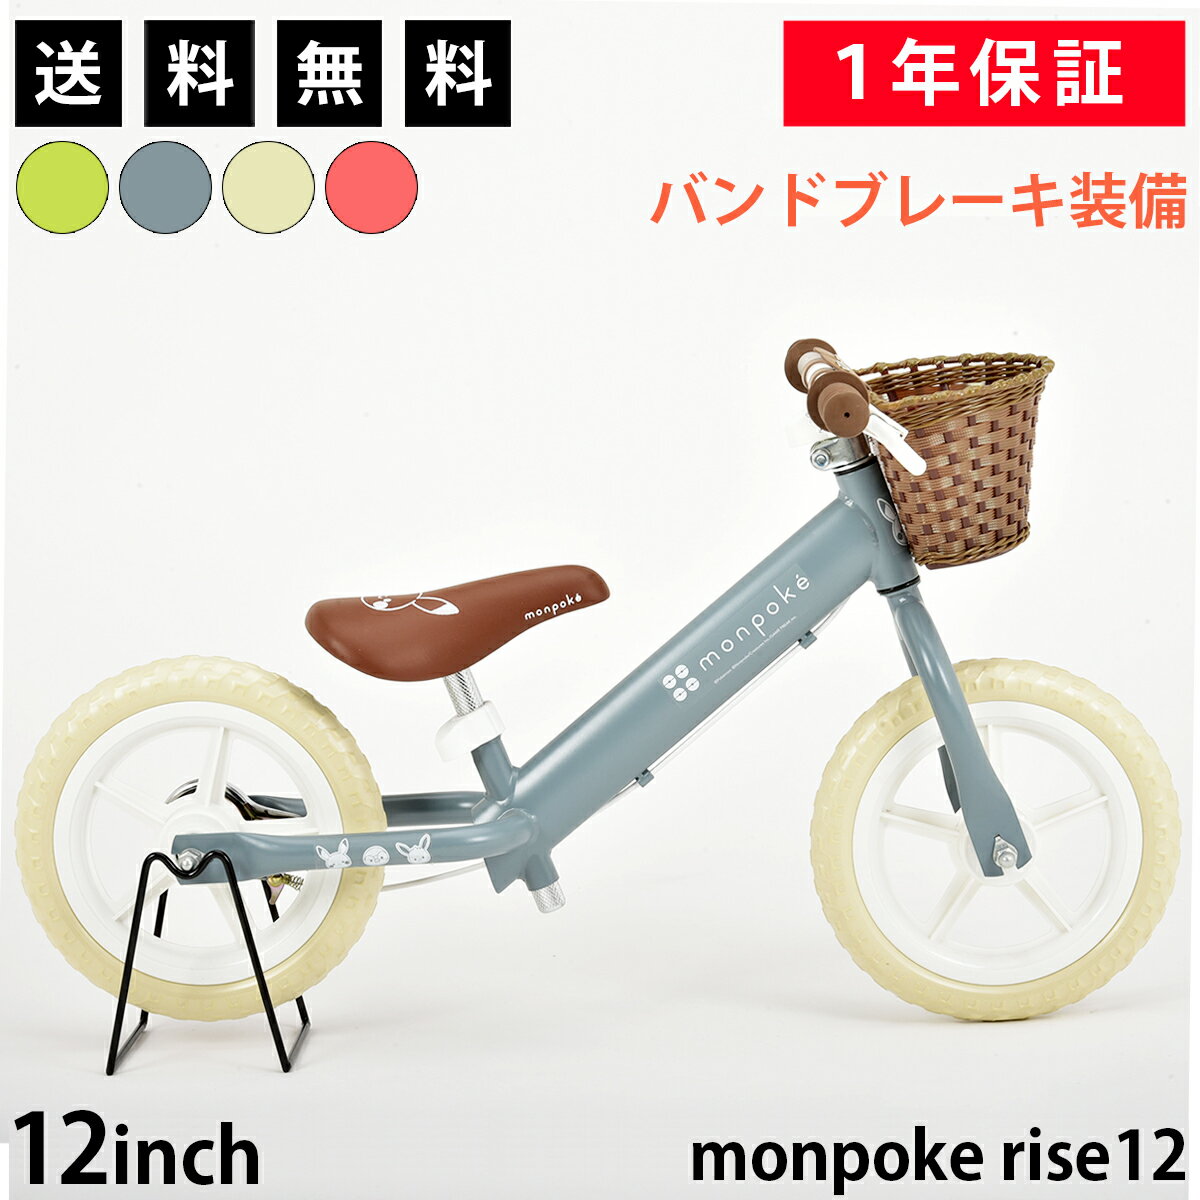 monpoke(モンポケ) rise12 トレーニングバイク 12インチ 